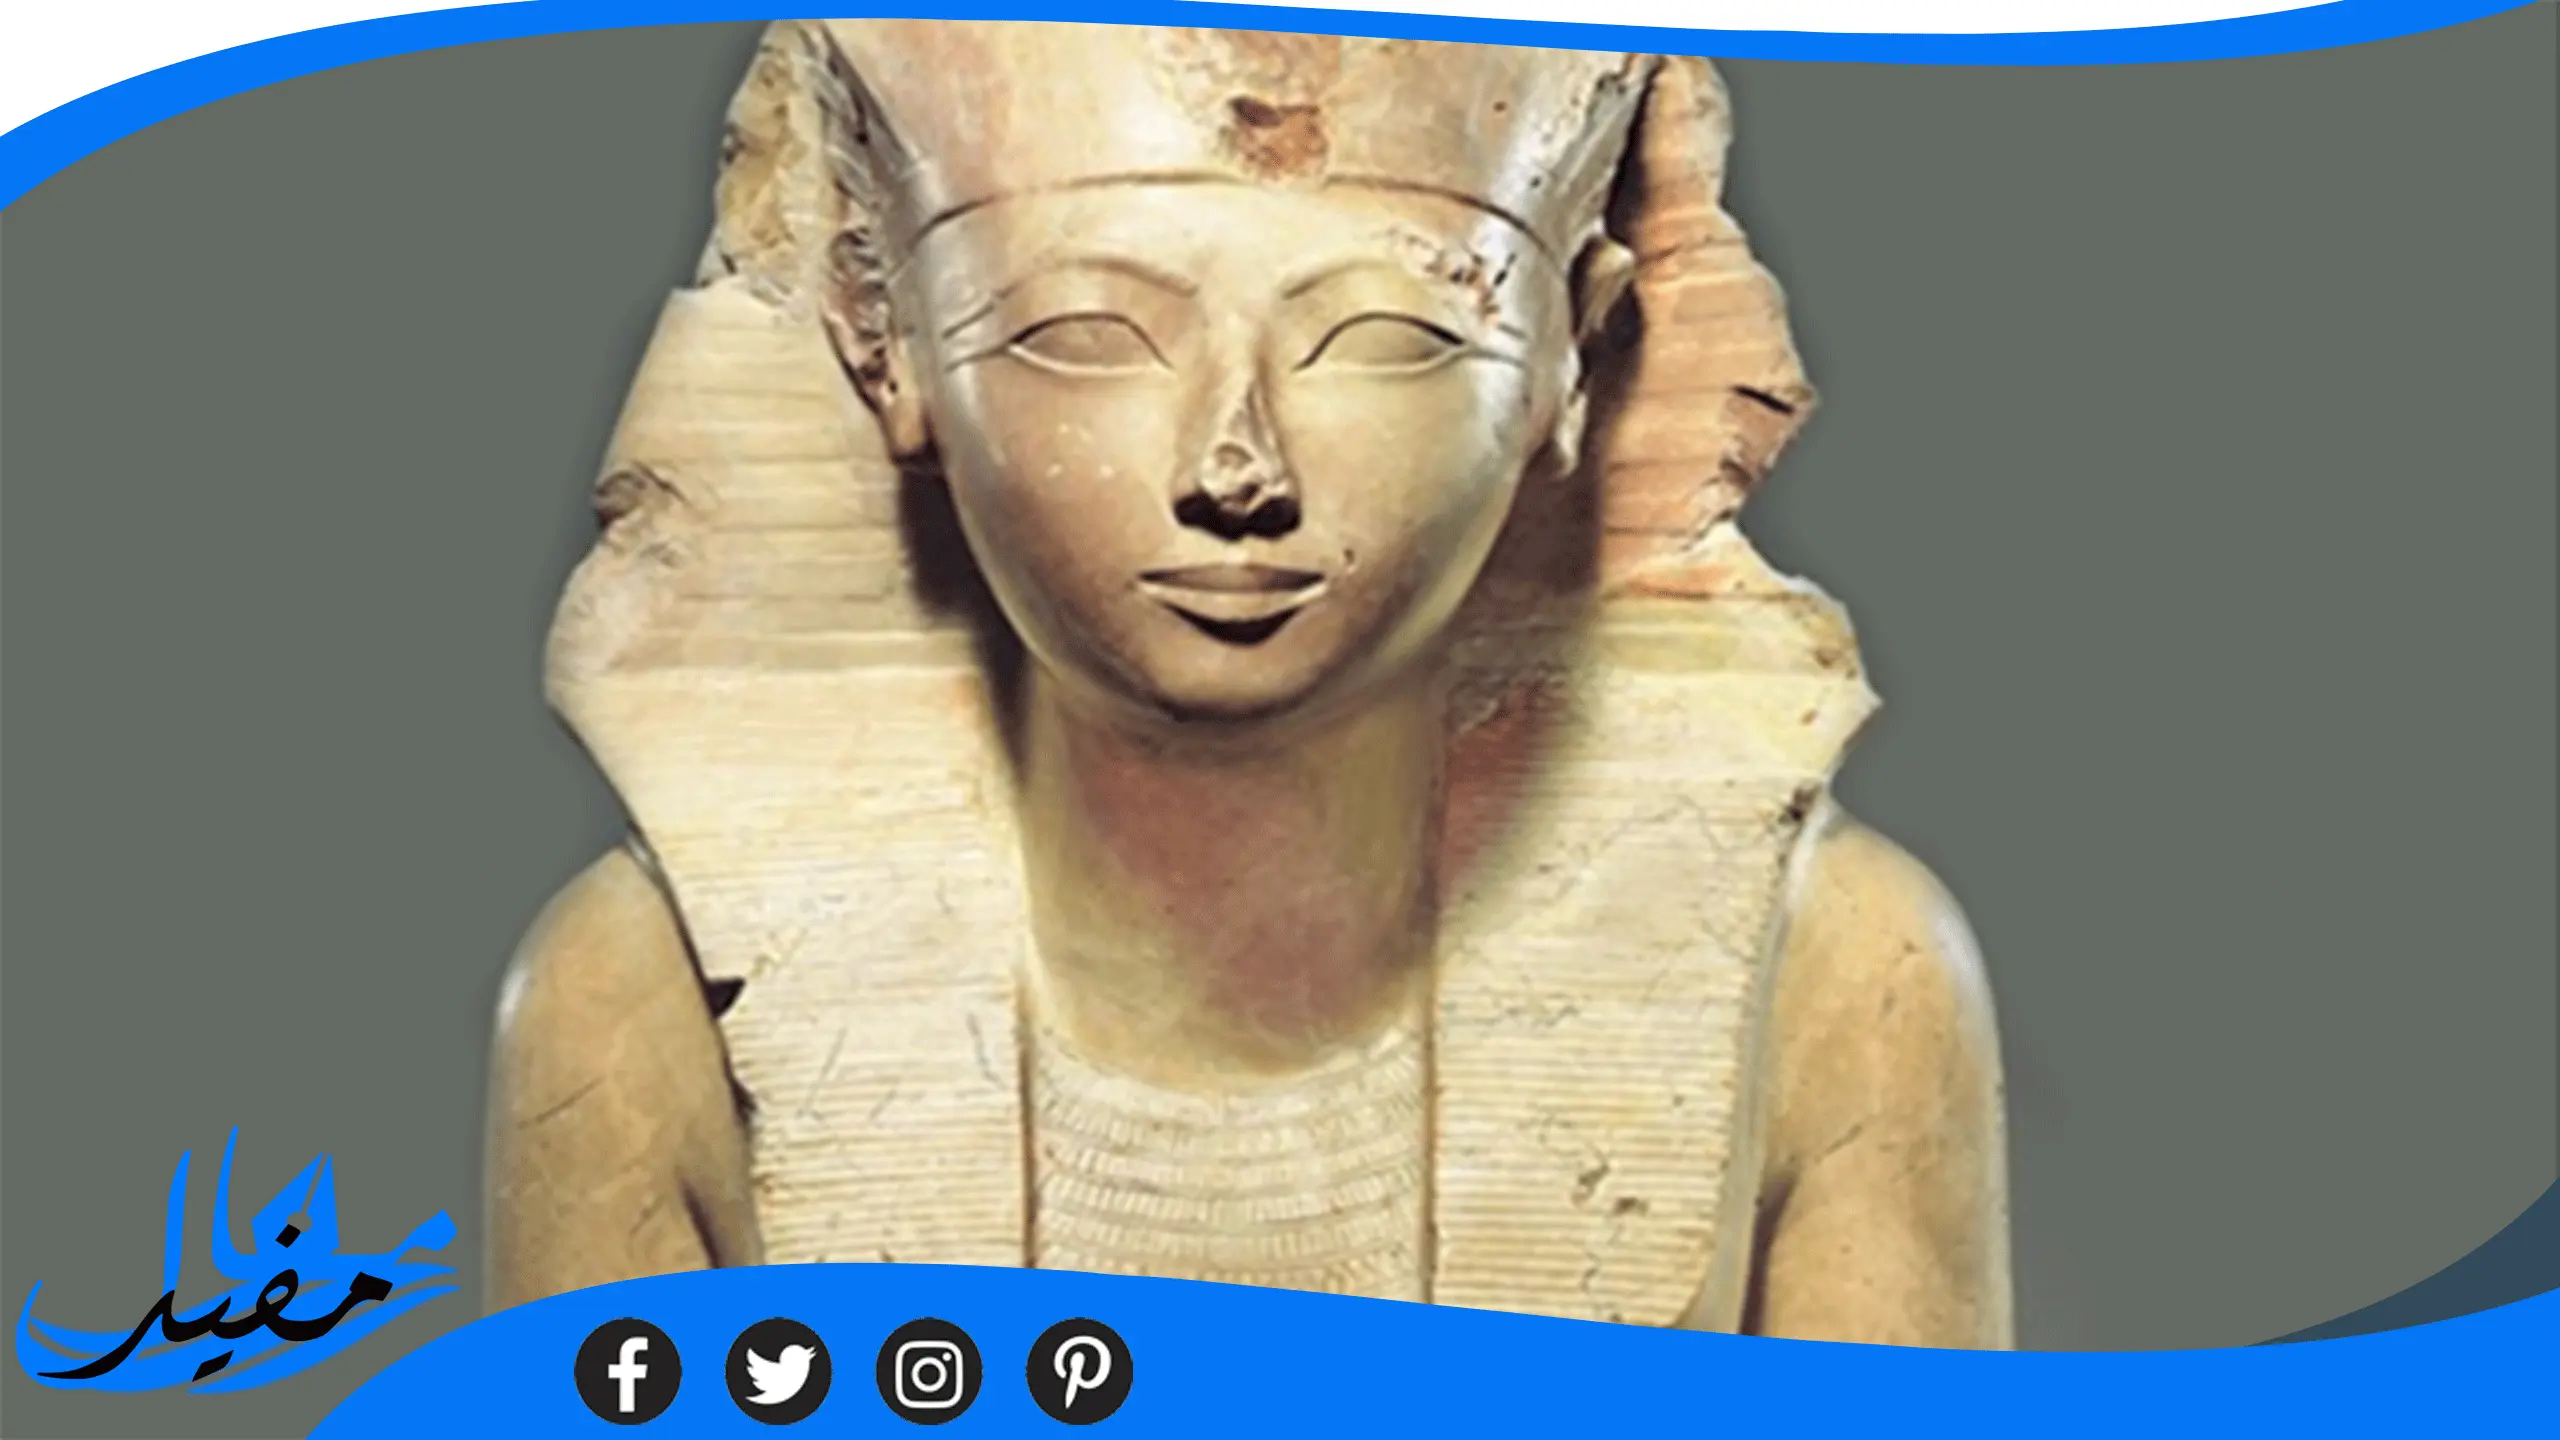 ملكة مصرية قديمة من 8 حروف حل لغز كلمات متقاطعه